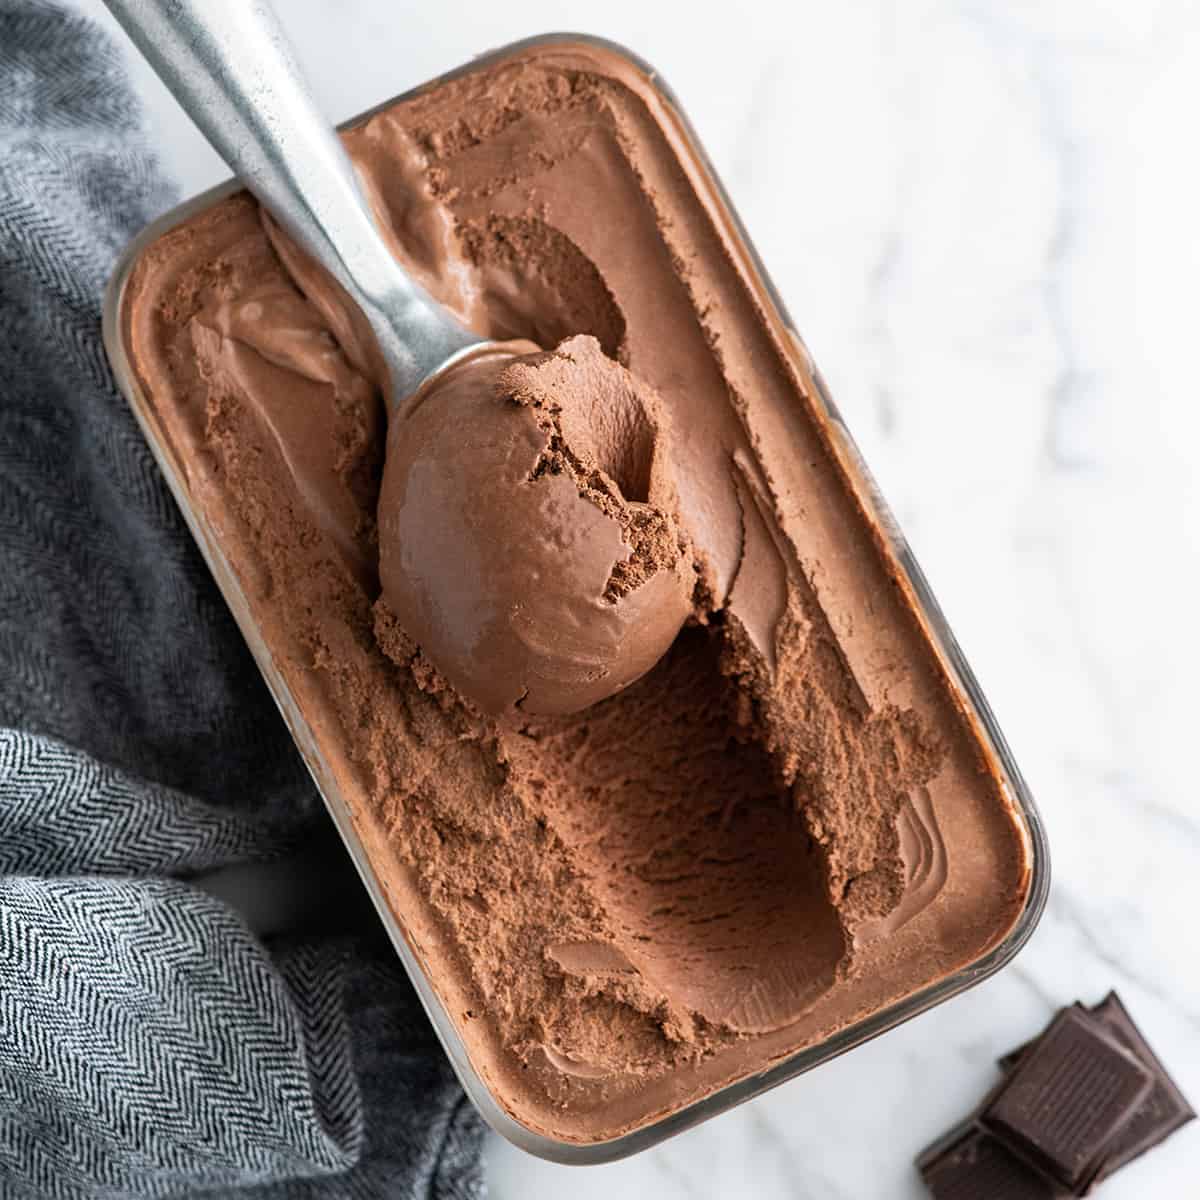 https://joyfoodsunshine.com/wp-content/uploads/2020/06/homemade-chocolate-ice-cream-recipe-1.jpg